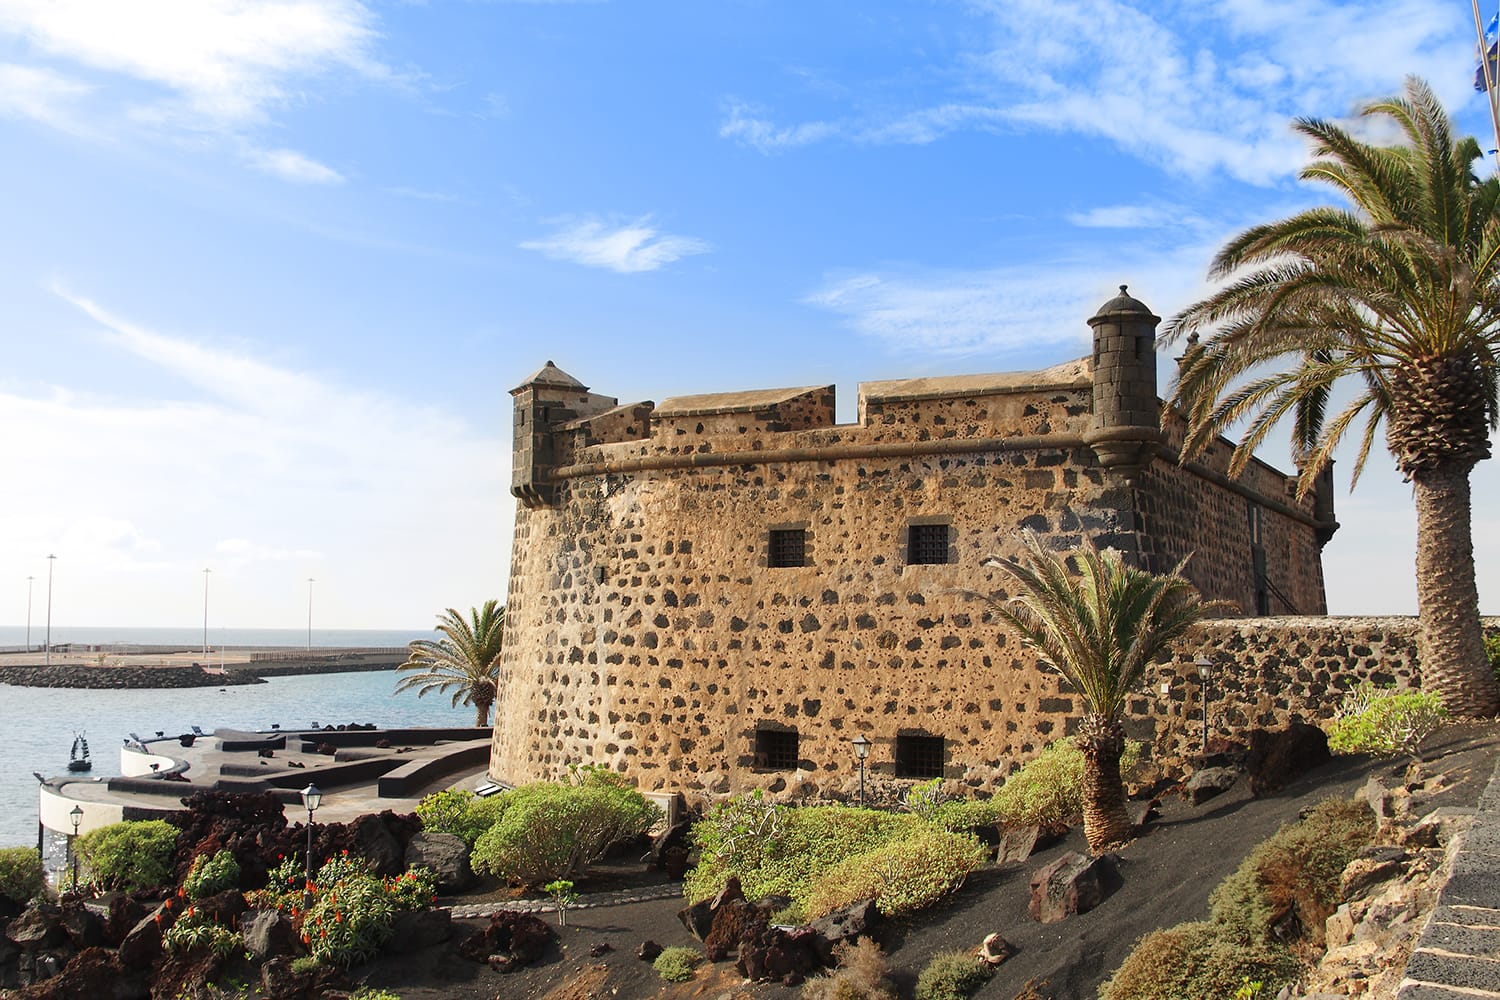 Castillo San Jose in Arrecife, Lanzarote, Canary Islands